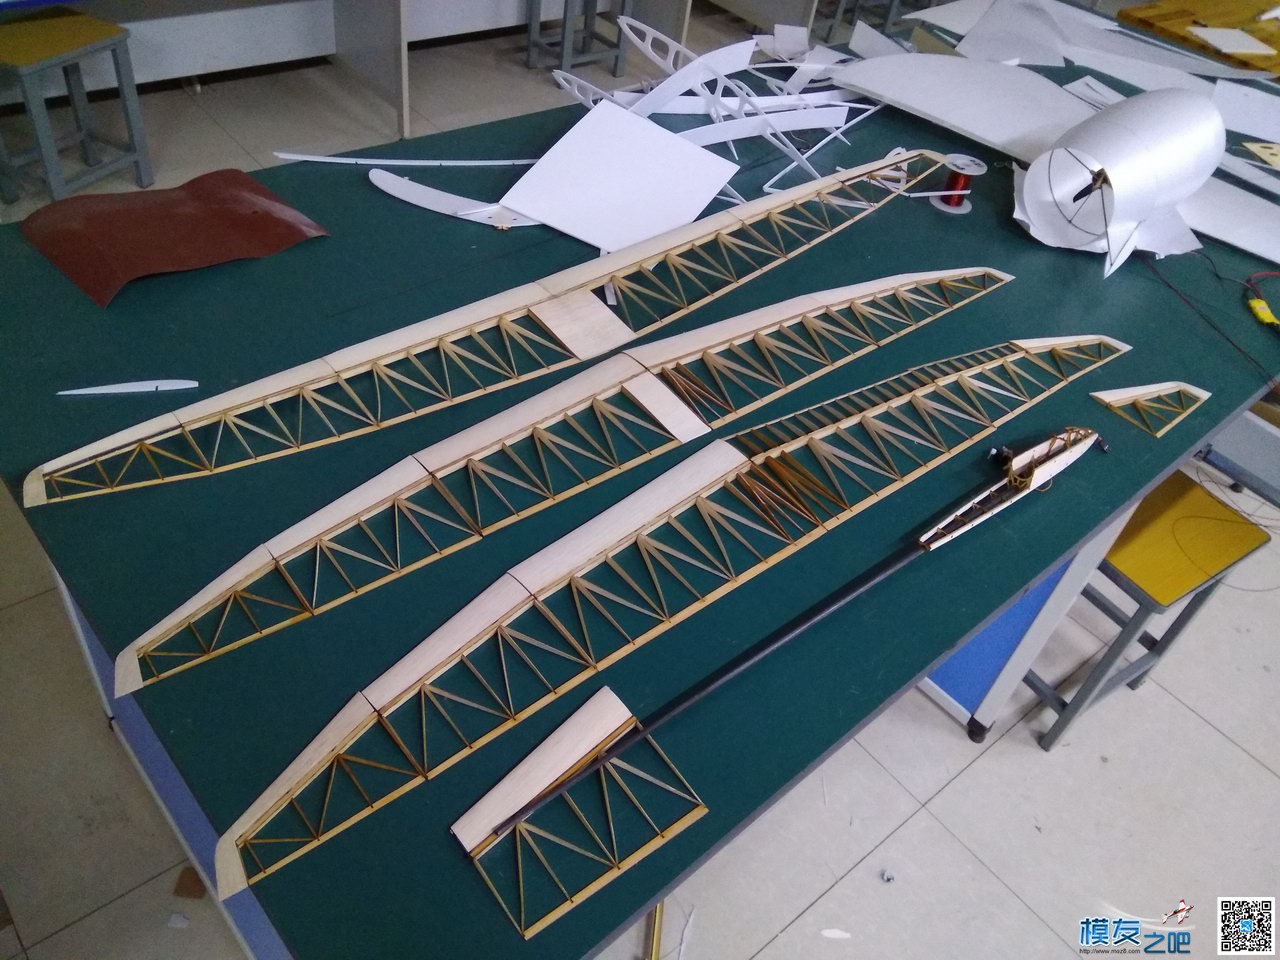 设计制作S8D火箭助推滑翔机 克拉玛依,设计制作,滑翔机,预选赛,新疆 作者:马头 2773 